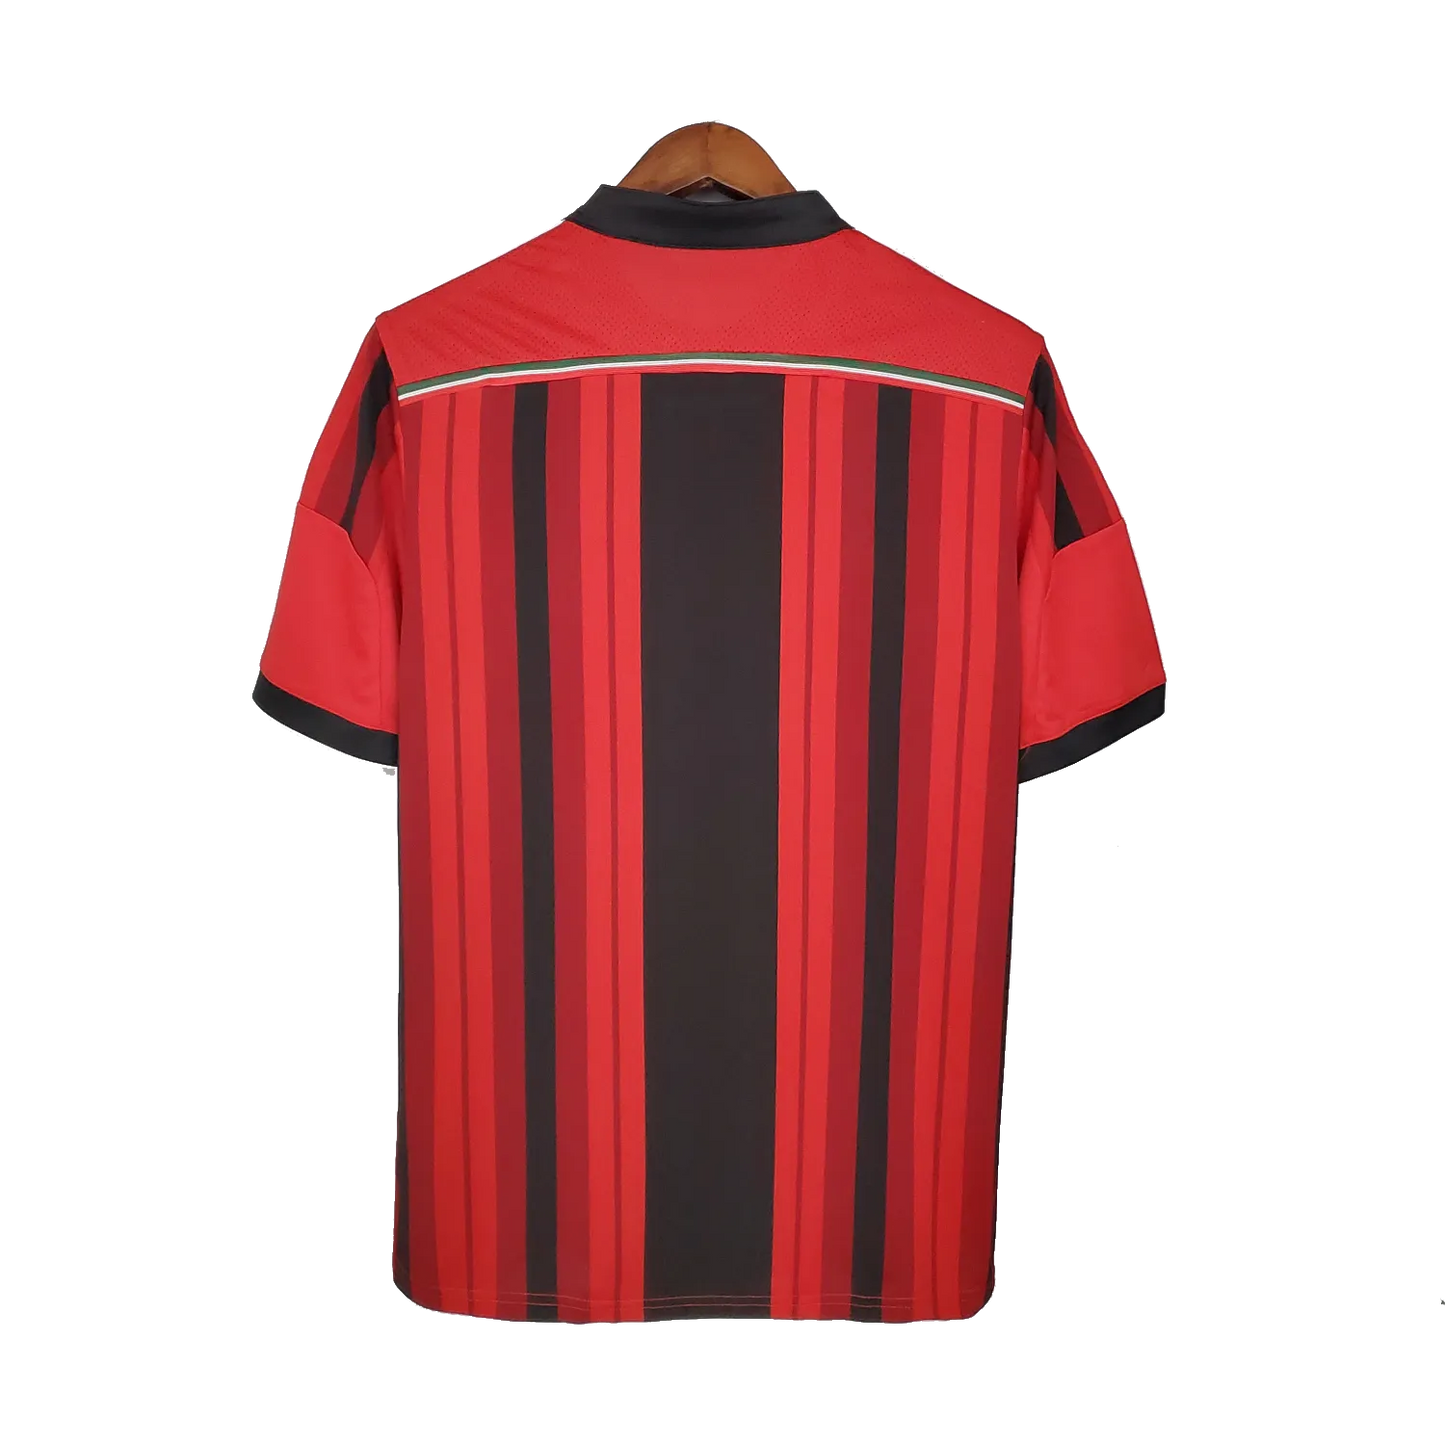 AC Milan Retro Home Jersey 2014/15 Red & Black Men's